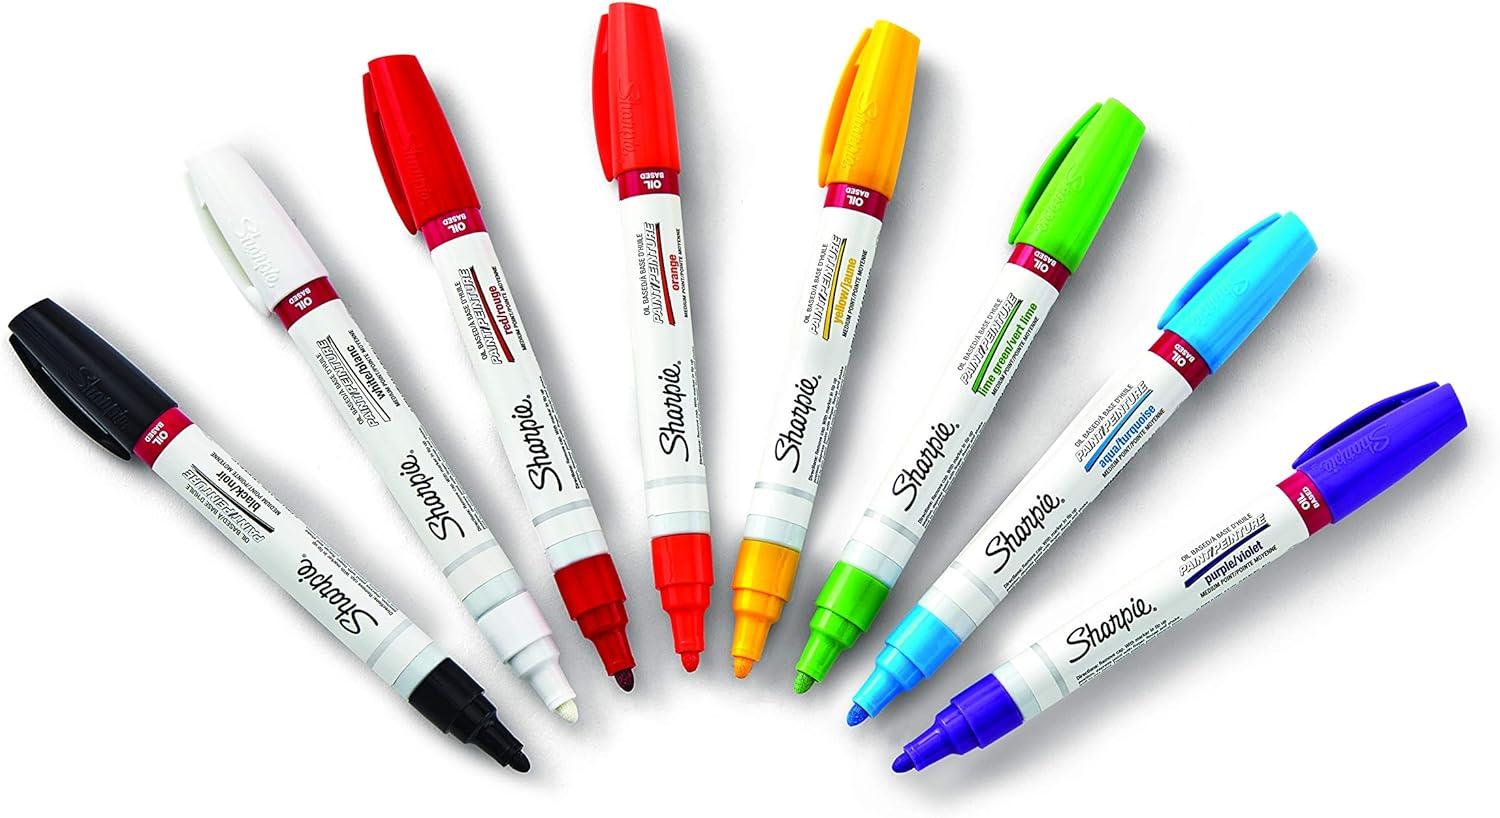  Sharpie Oil-Based Paint Marker, Medium Tip, Red